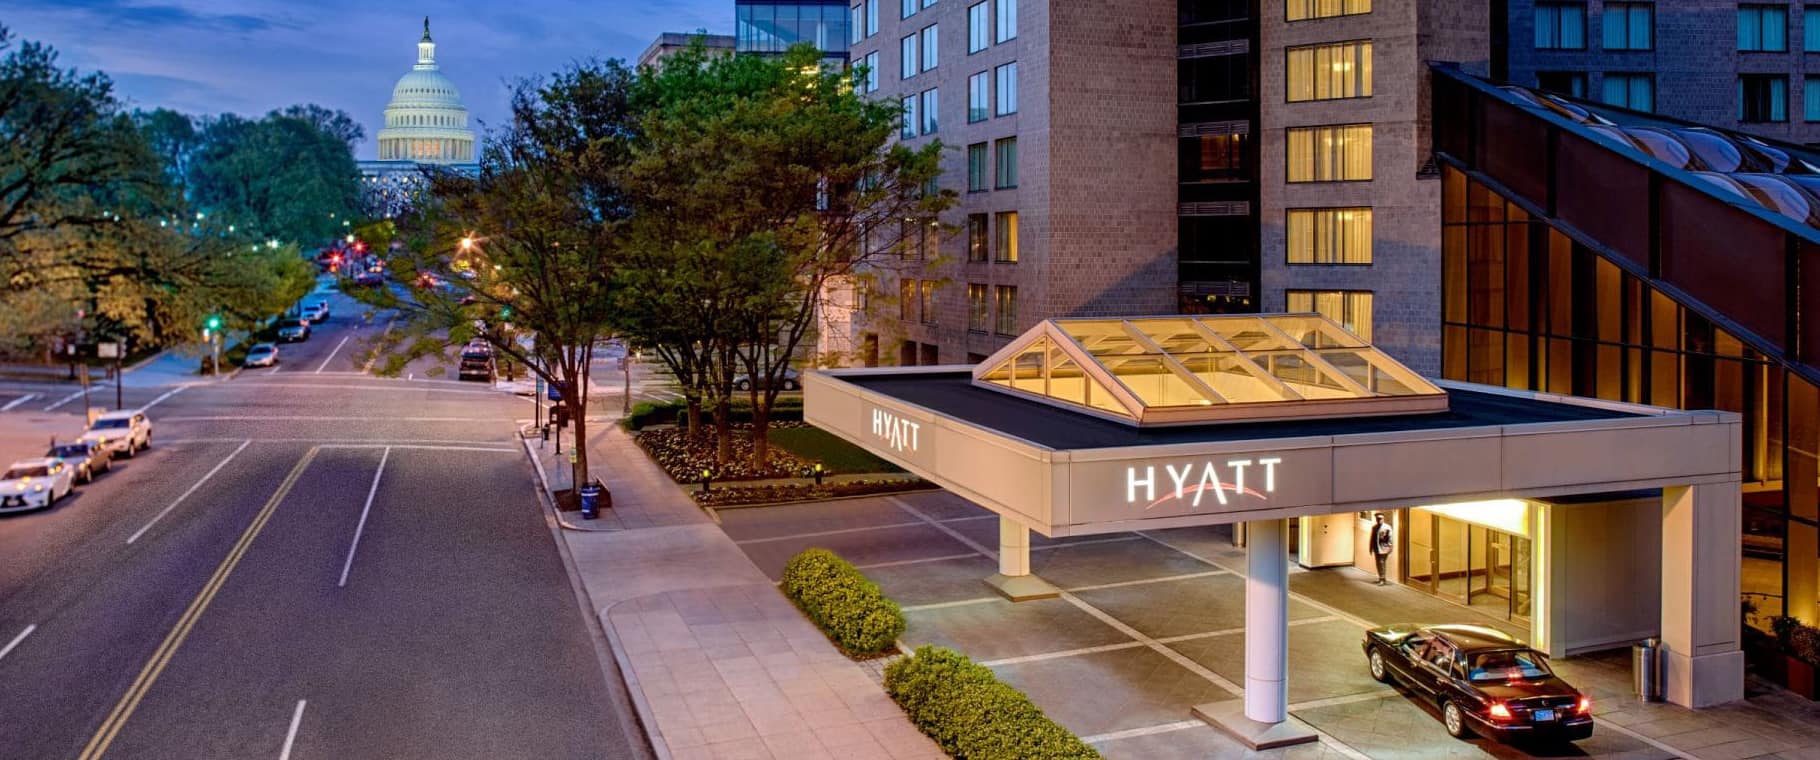 Hyatt Regency Hotel | Washington, D.C.